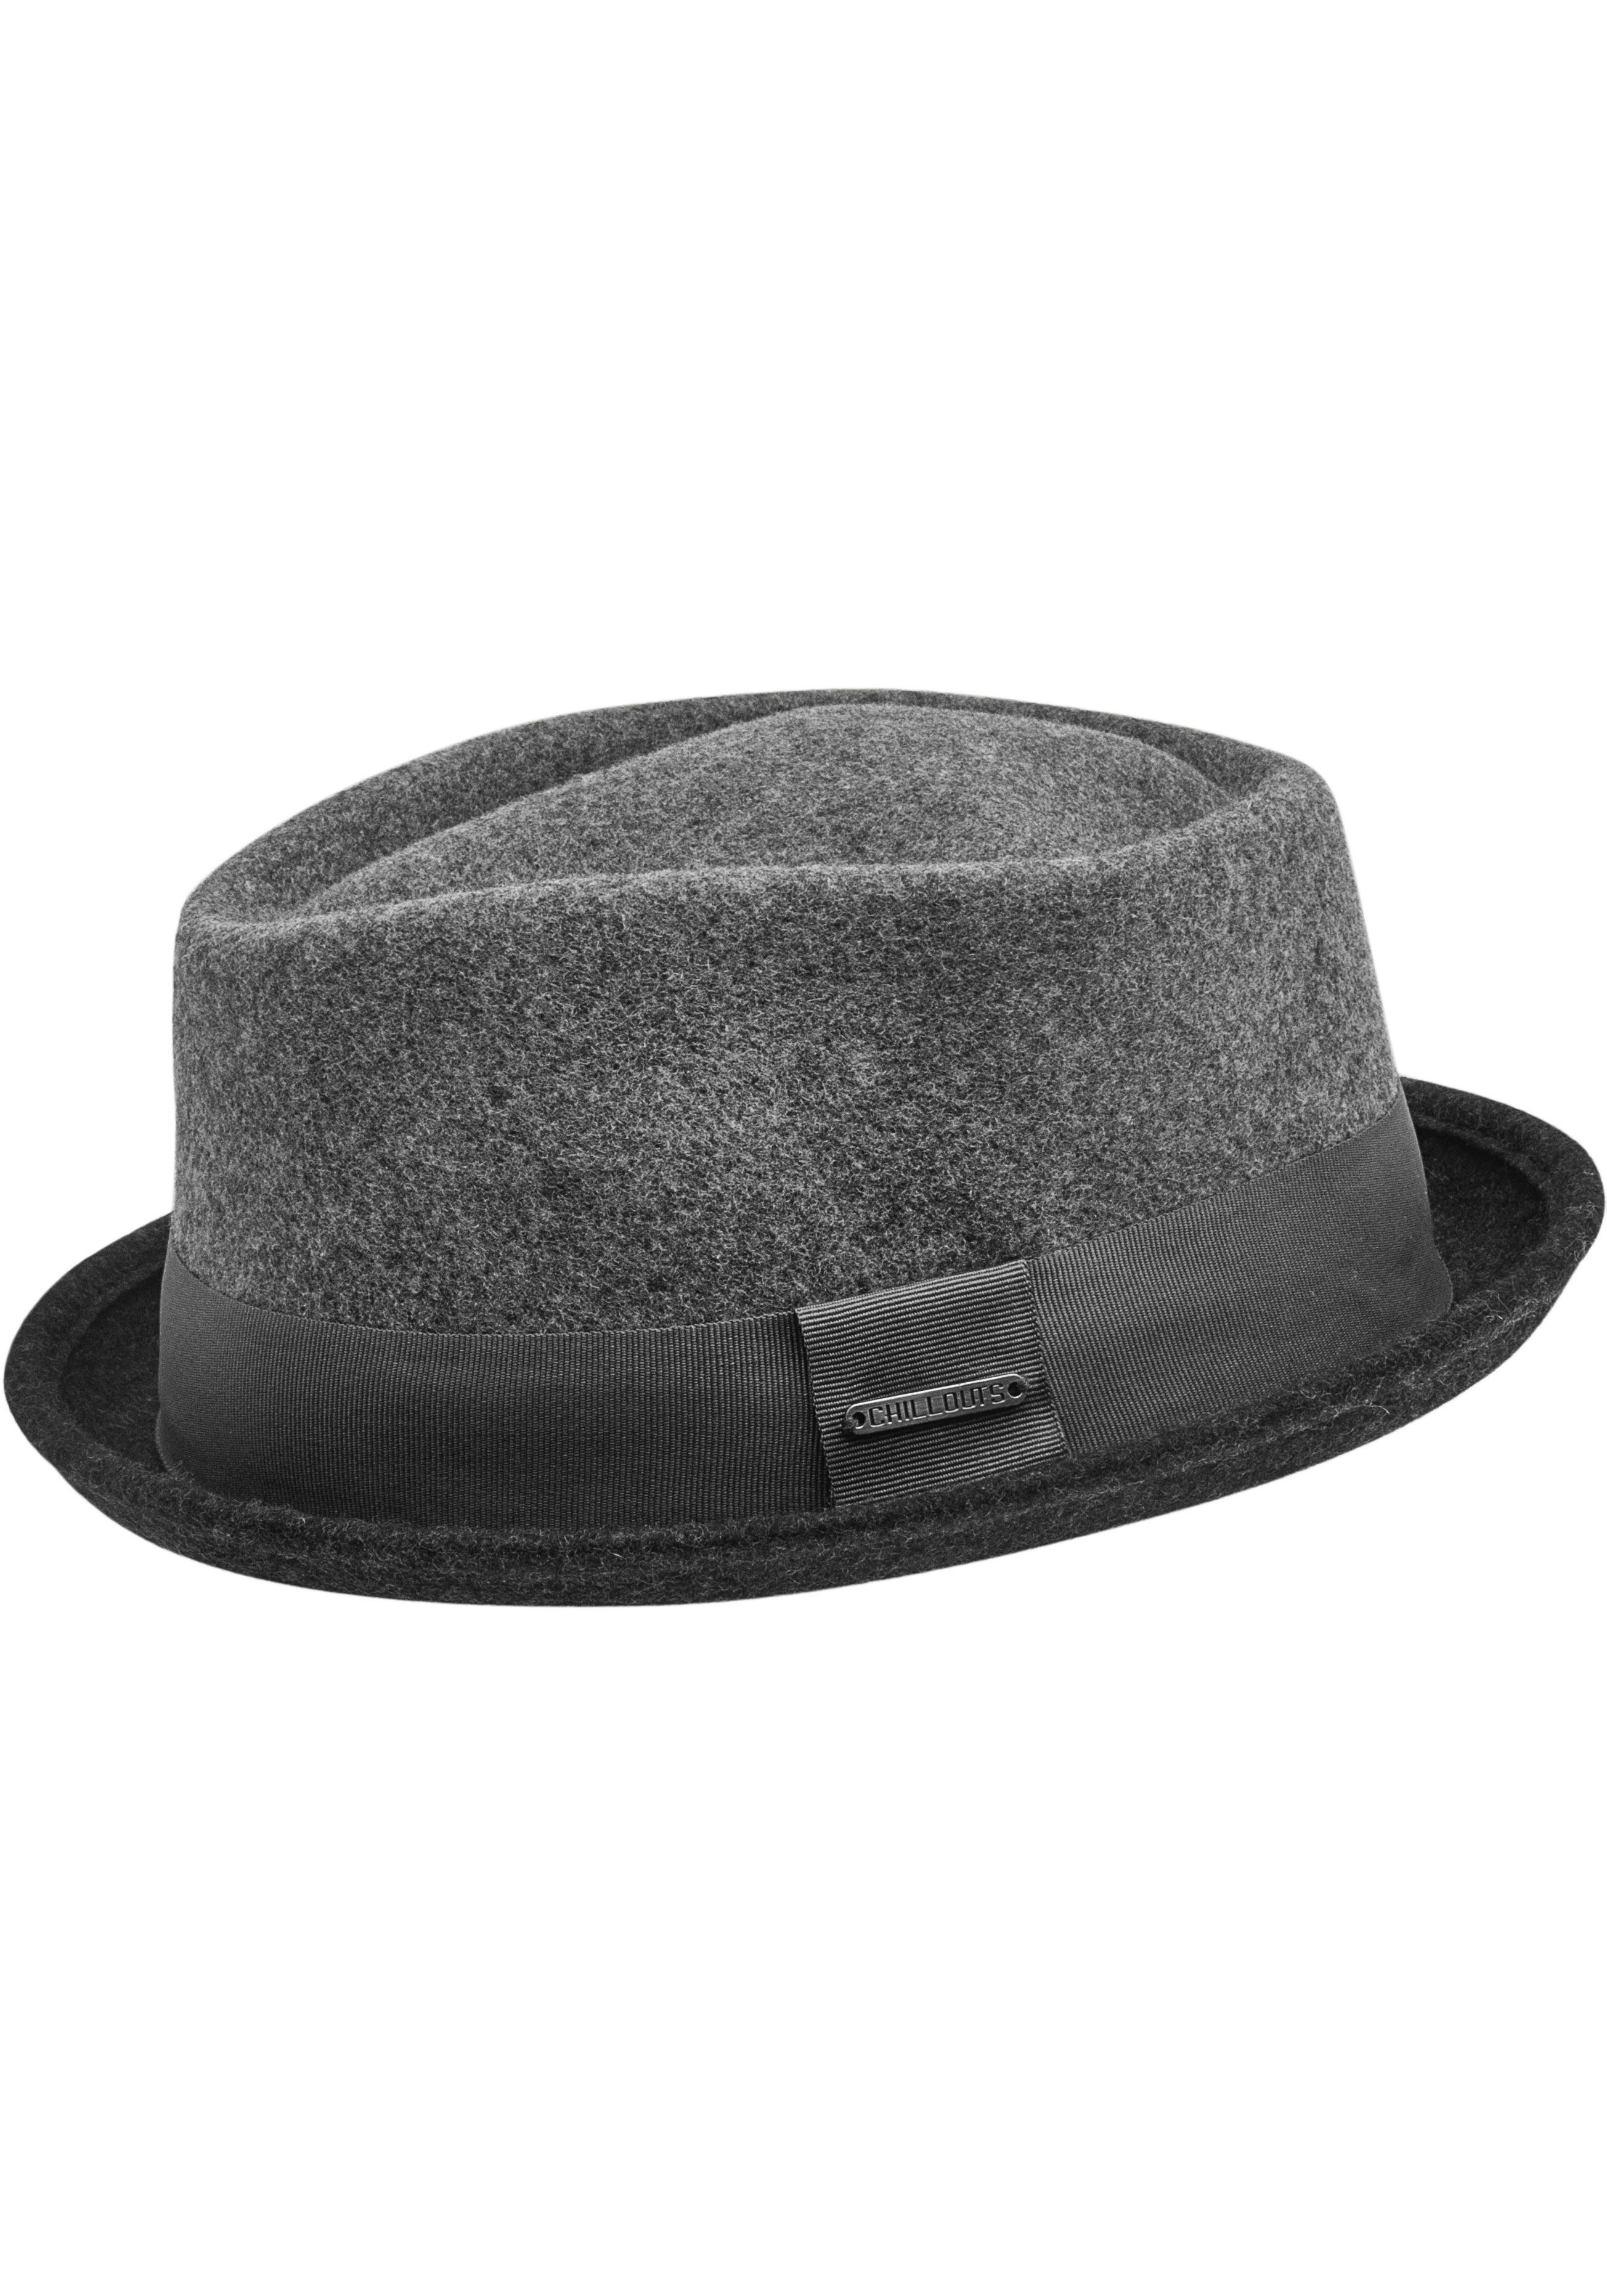 grey Hat Filzhut chillouts Neal